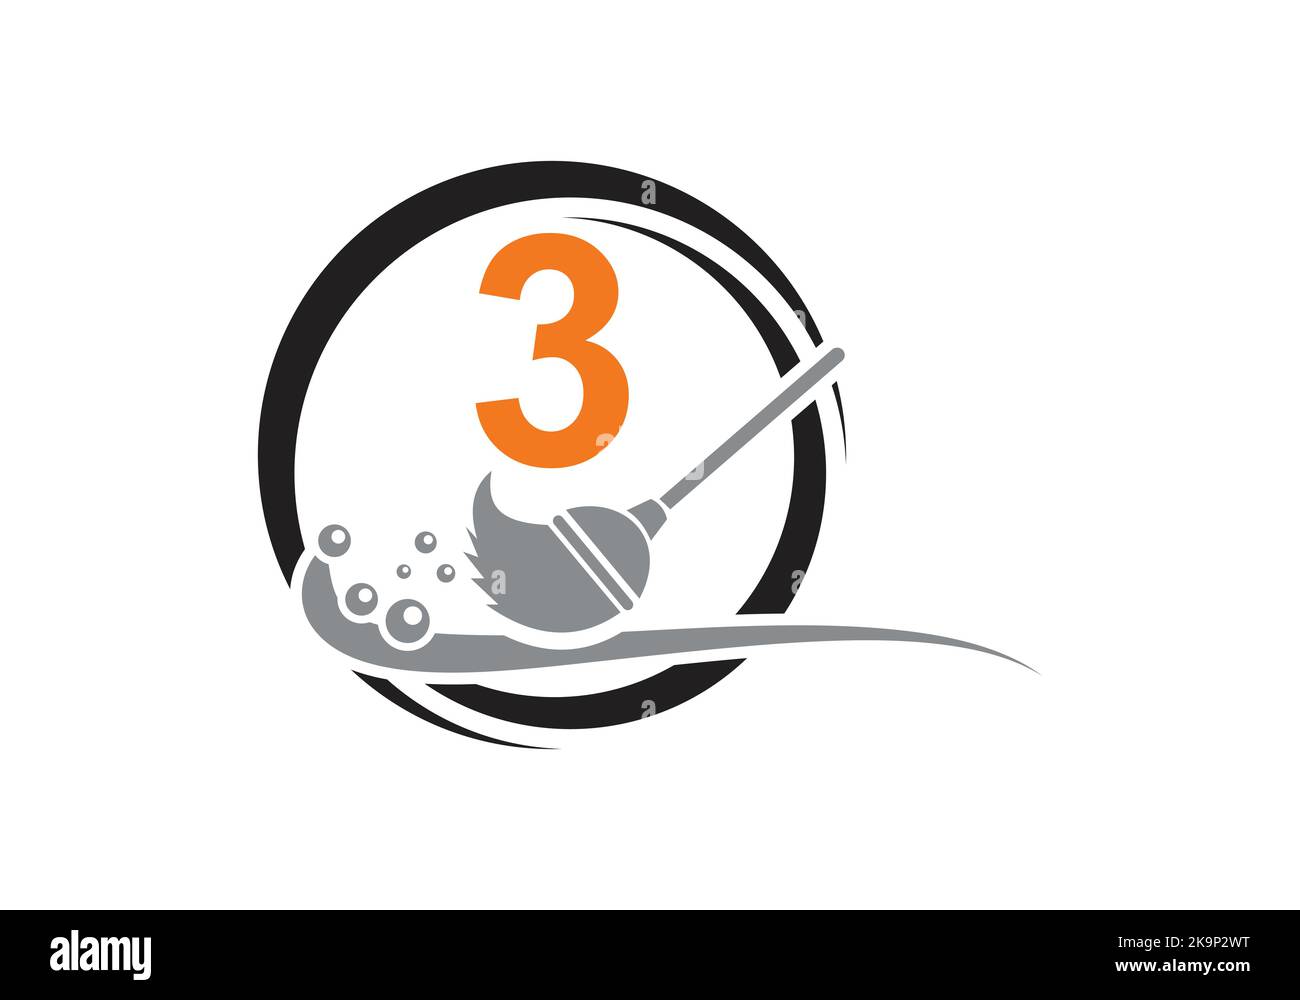 Hausputz-Logo Auf Buchstabe 3 Mit Water Spa Und Leaf-Konzept. Dienstmädchen-Logo, Symbol Für Reinigungsbürste, Wassertropfenschablone. Stock Vektor